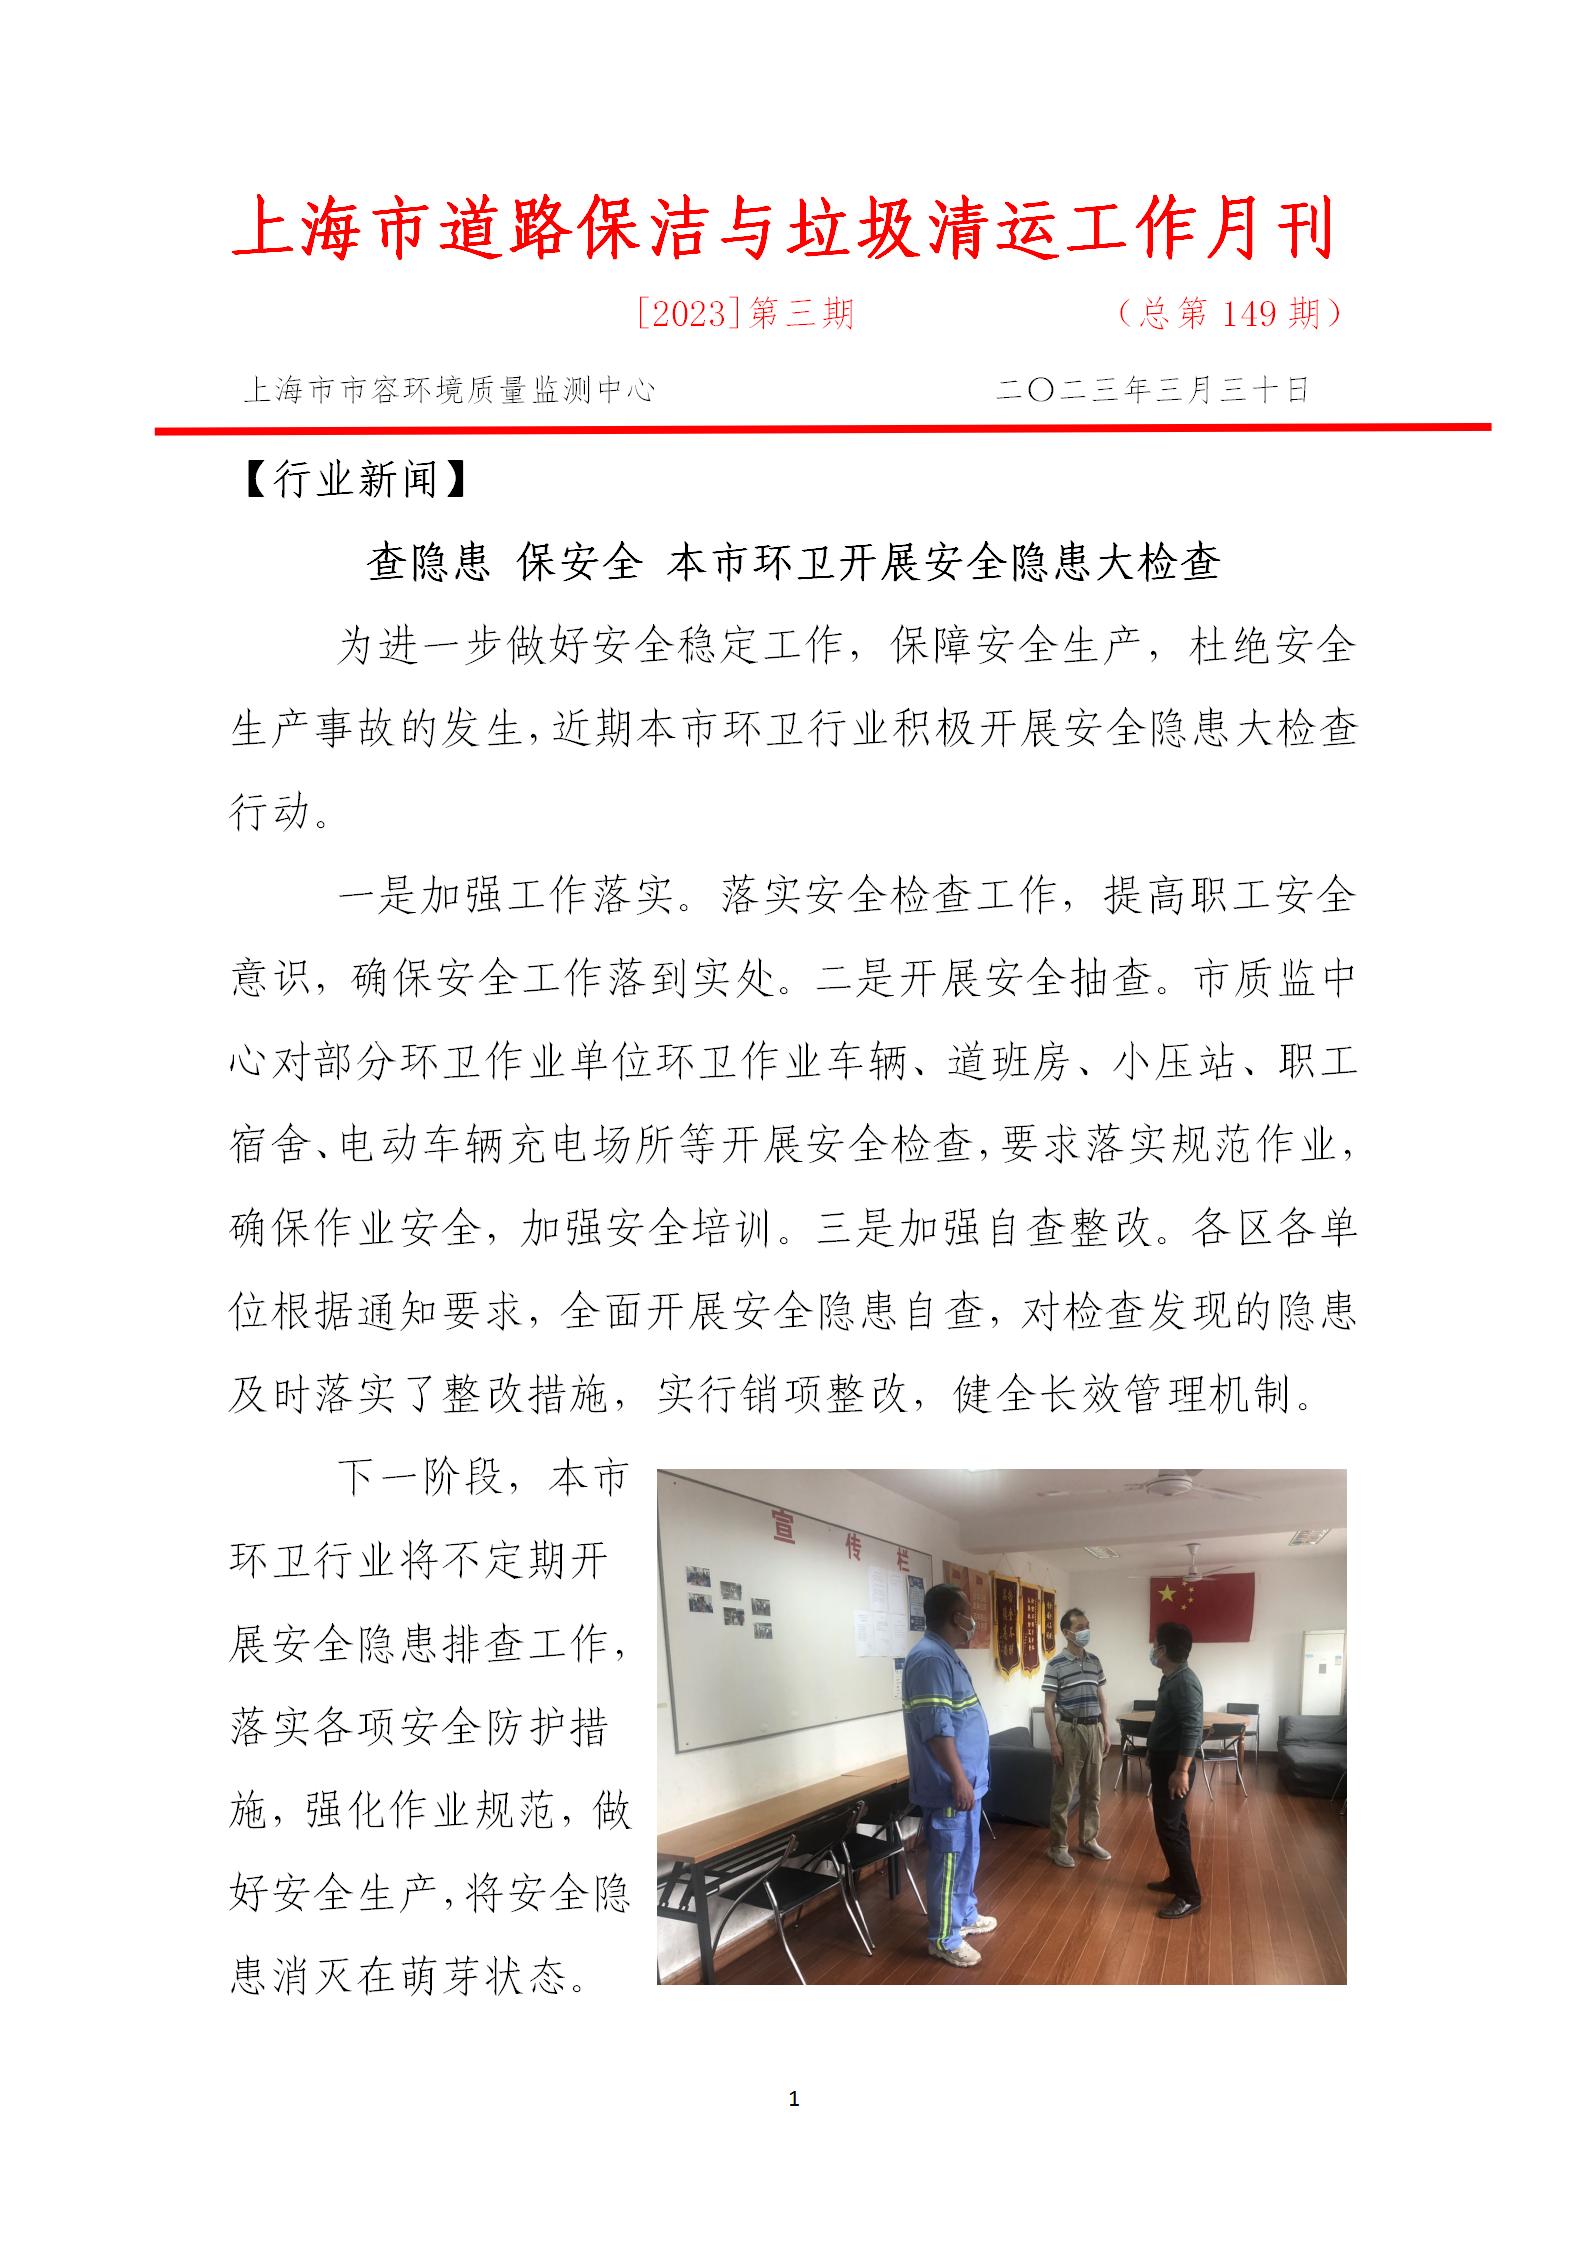 上海市道路保洁与垃圾清运工作月刊  2023年第3期(8)_01.jpg